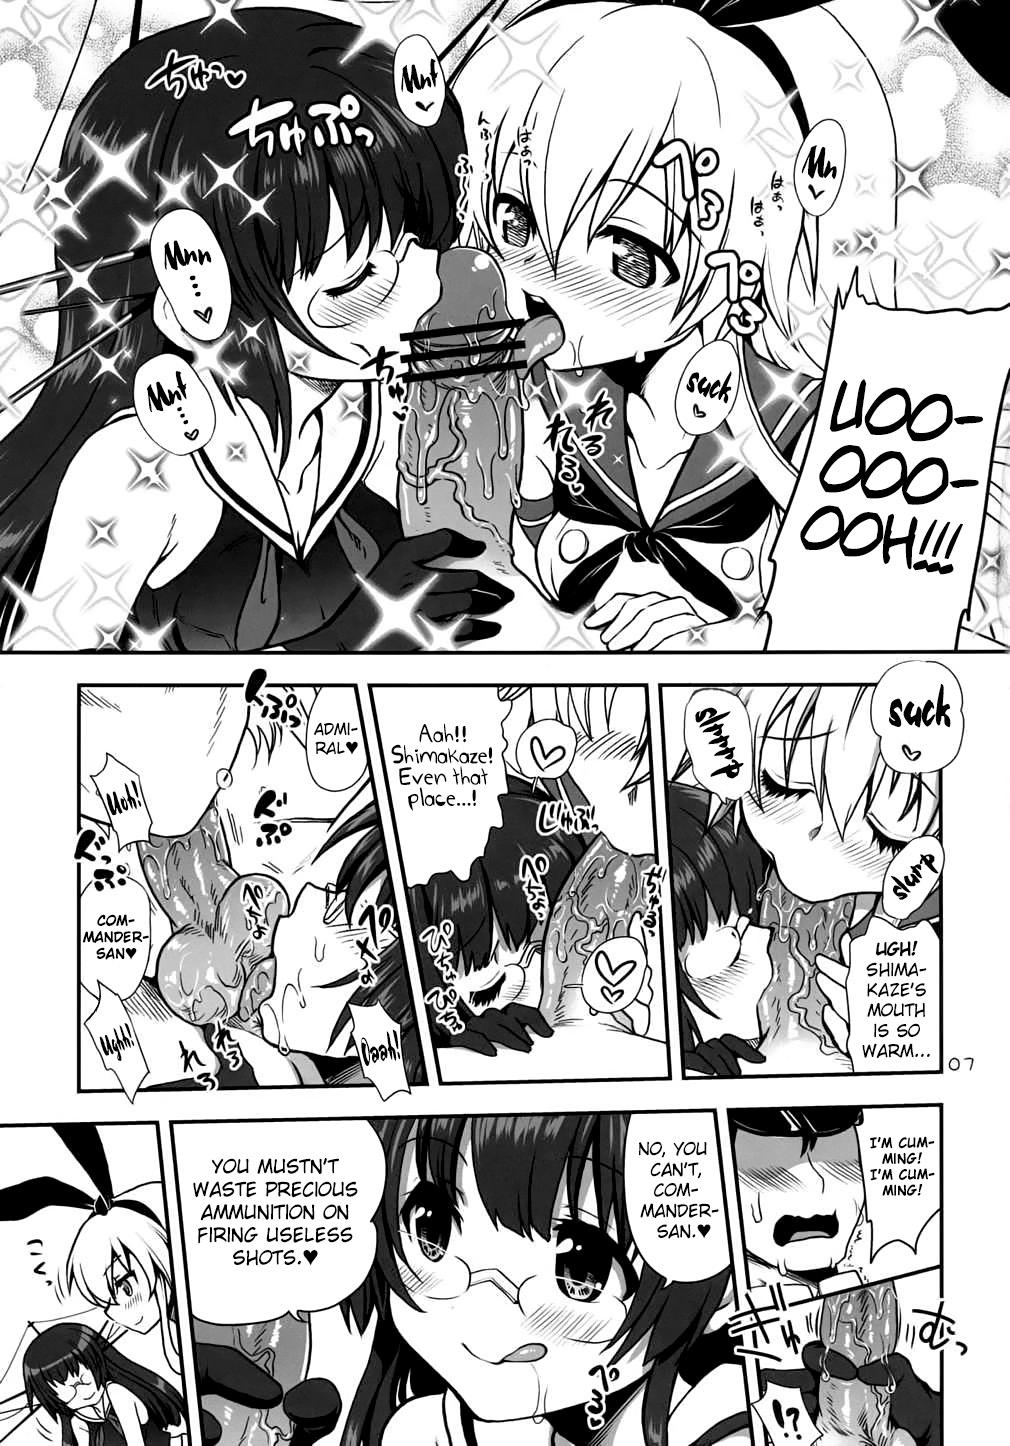 She a hack aim you Shimakaze Choukai no Daisakusen! Maya-sama o Kaijuu seyo!! - Kantai collection Jockstrap - Page 6